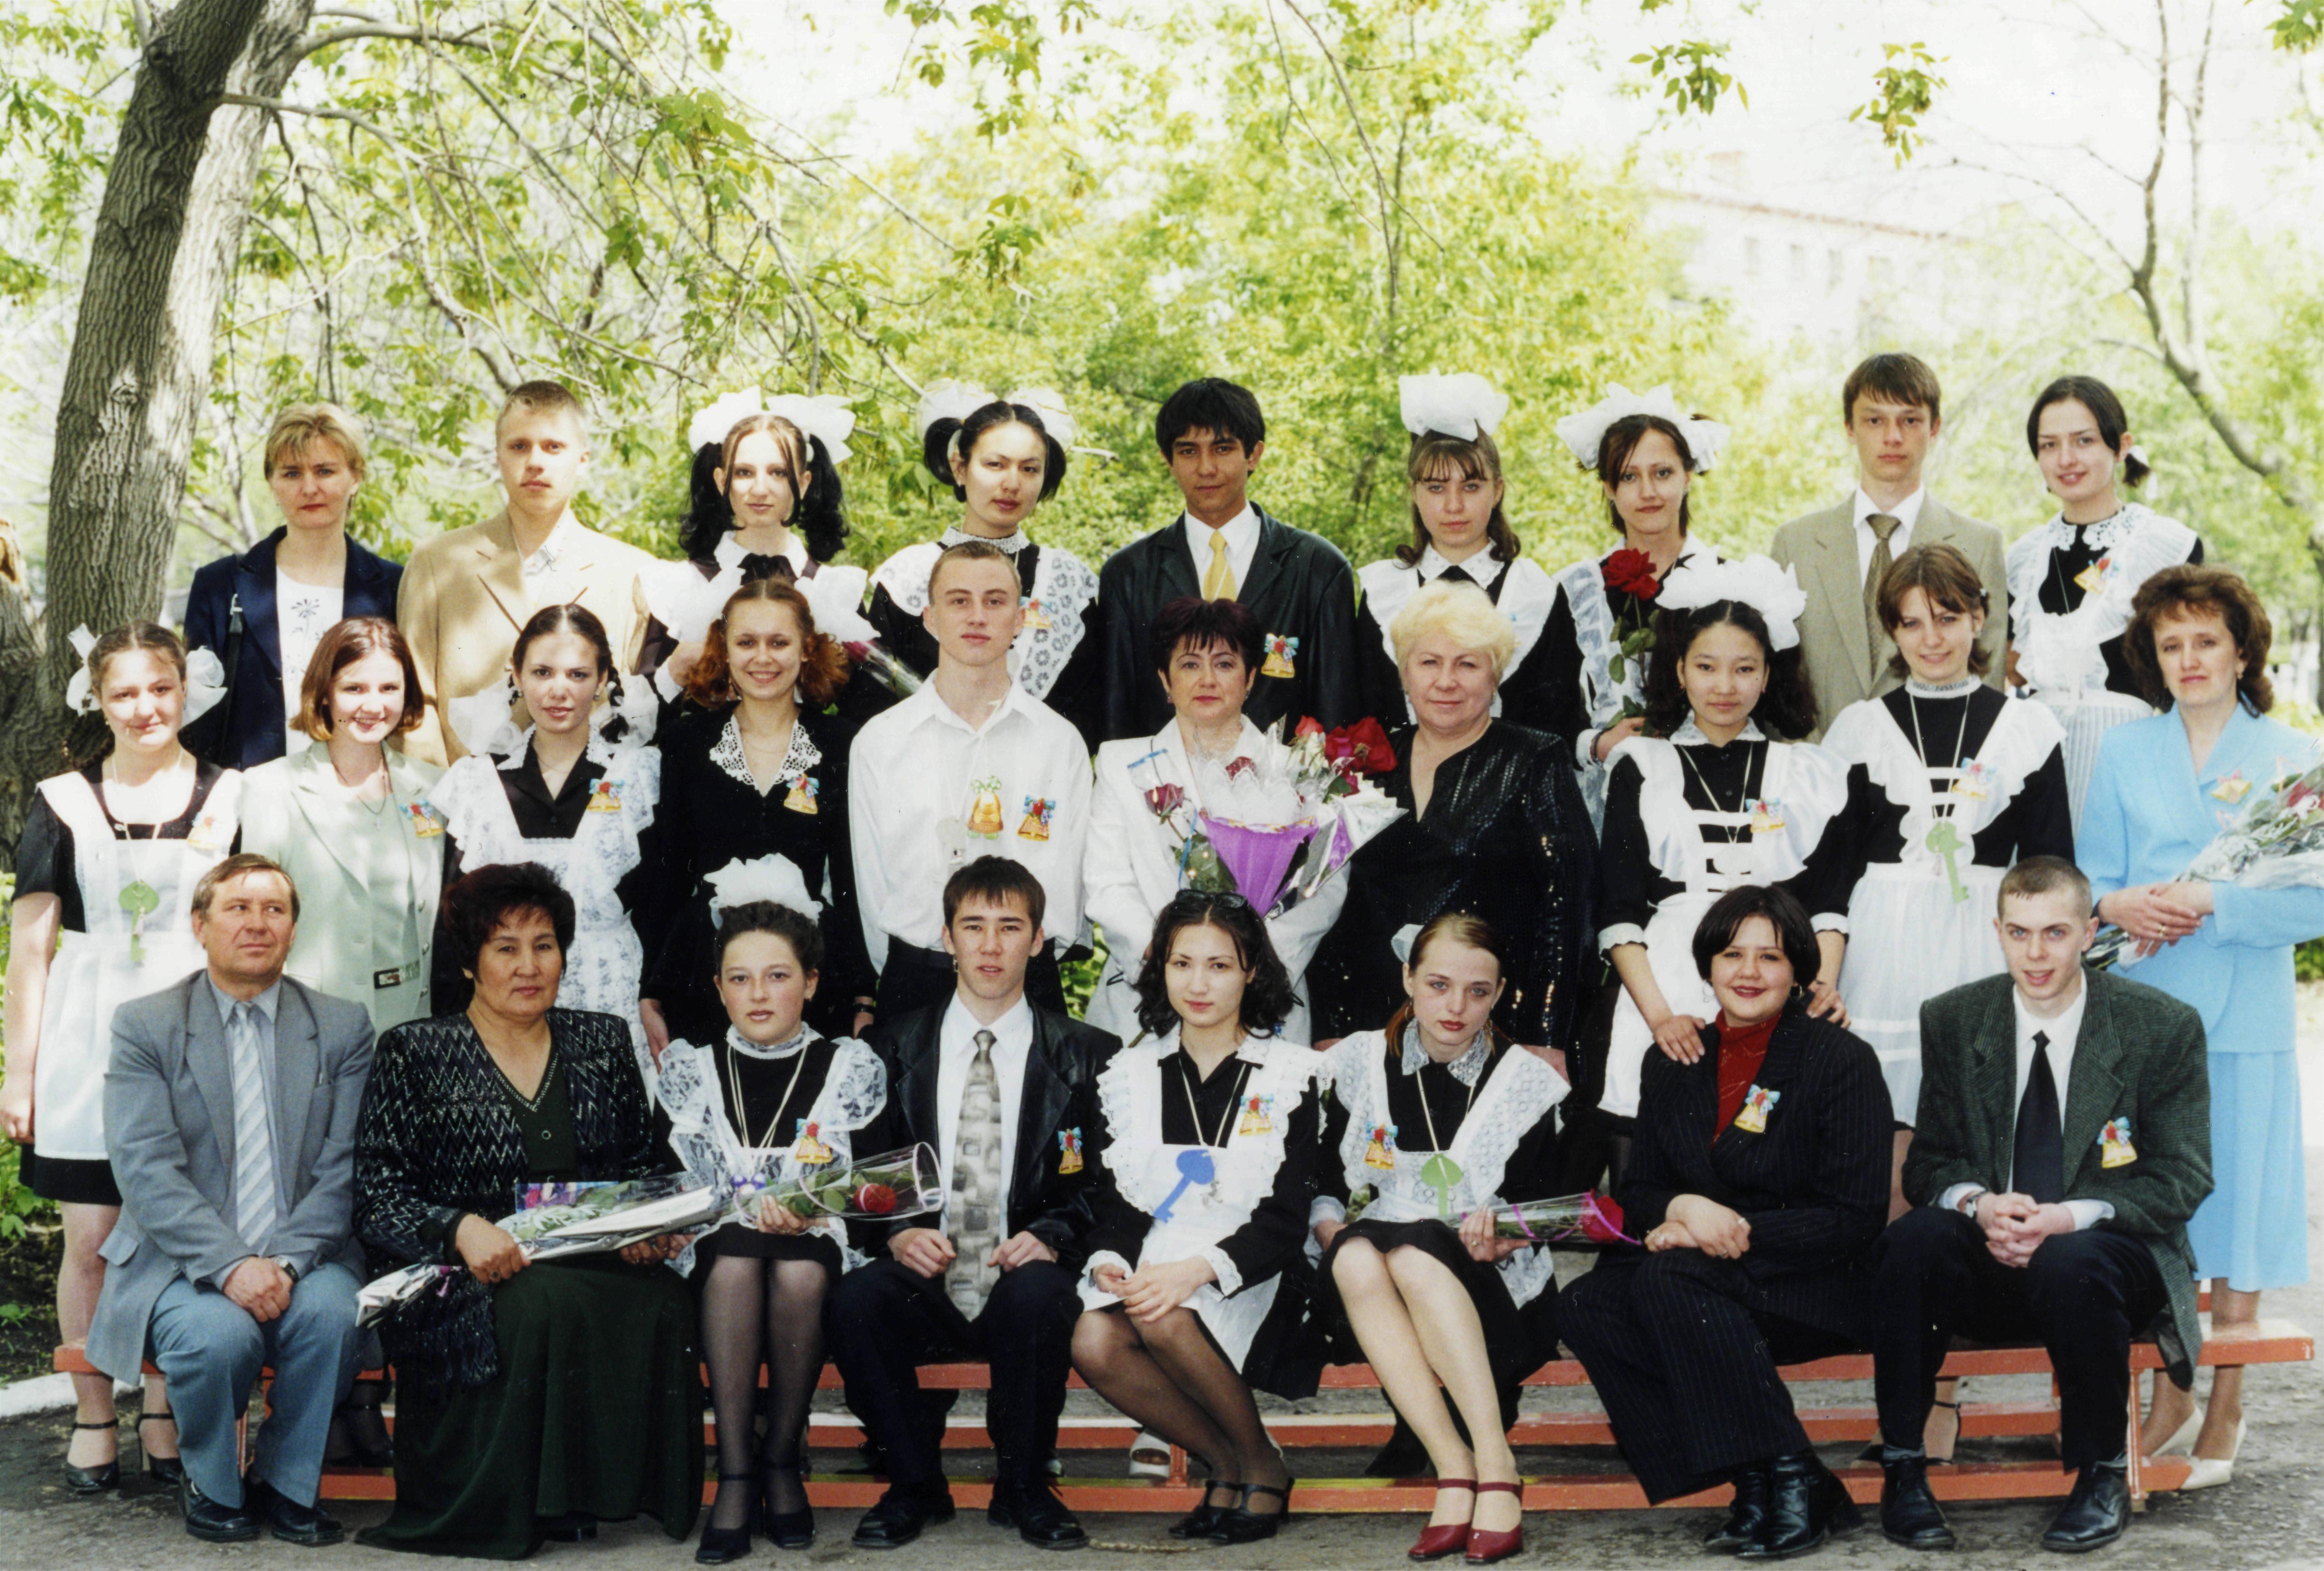 Выпускники 2002 года